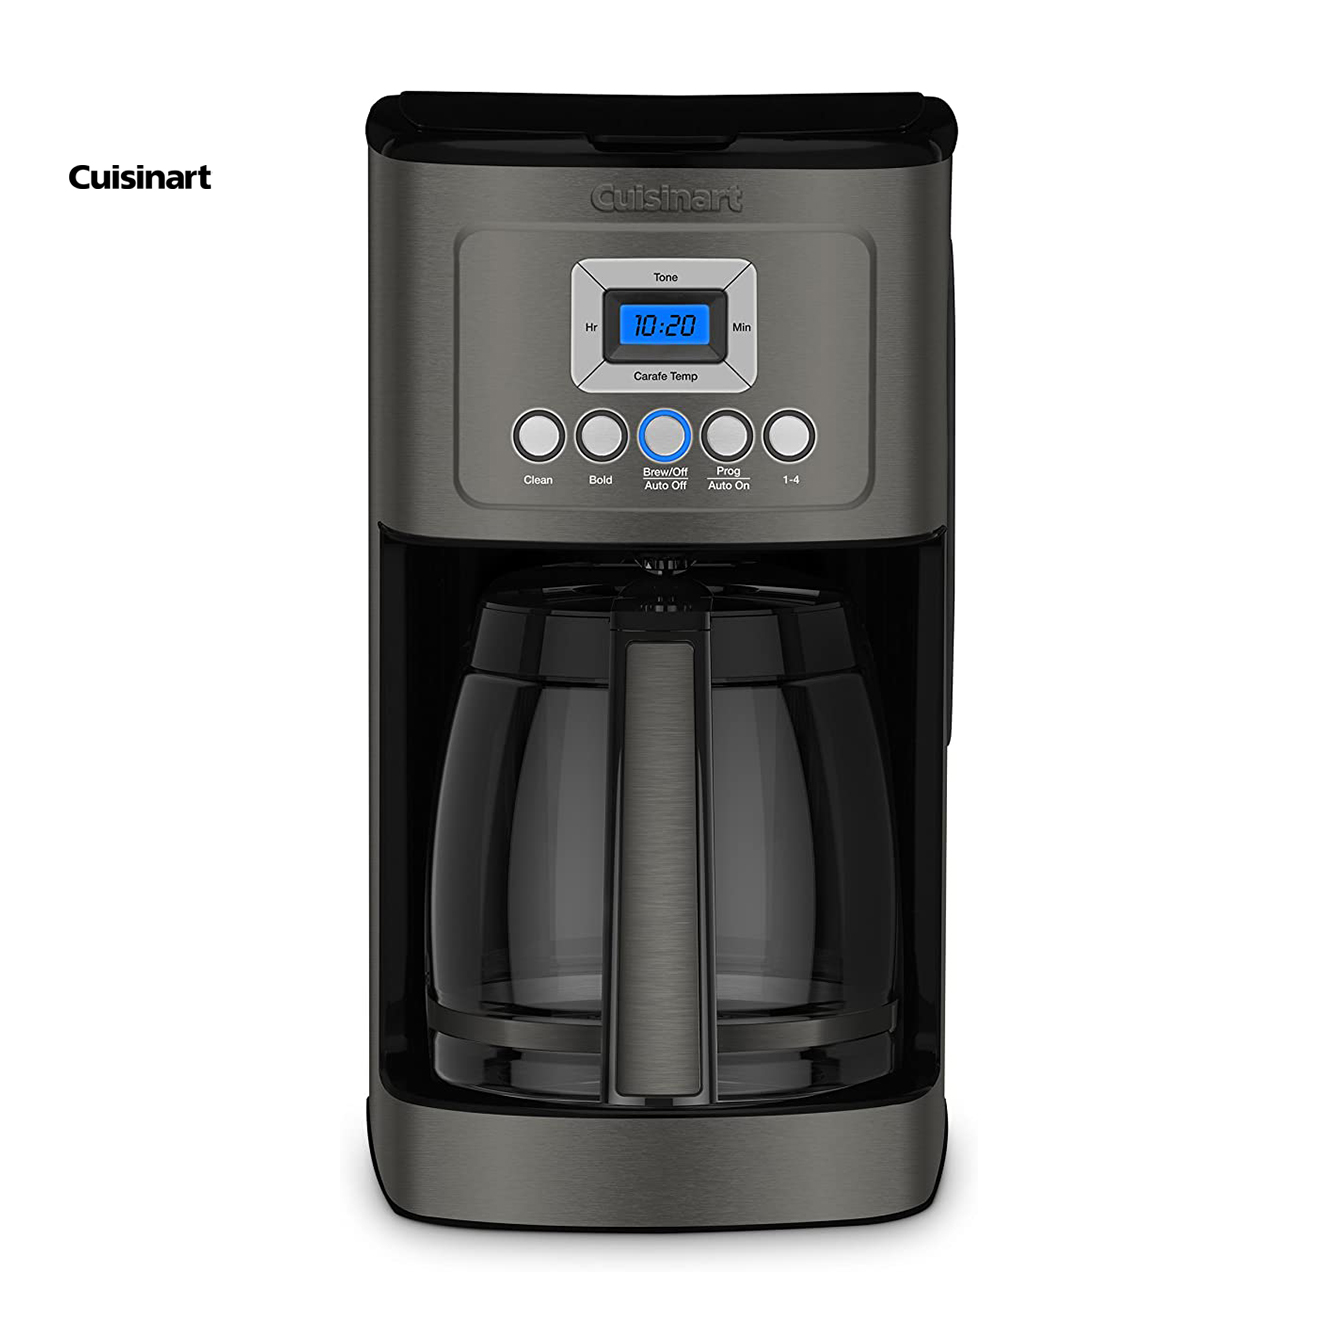 Cuisinart DCC-1800FR Cafetera programable de 14 tazas con opción de café  más caliente, color plateado, reacondicionado certificado